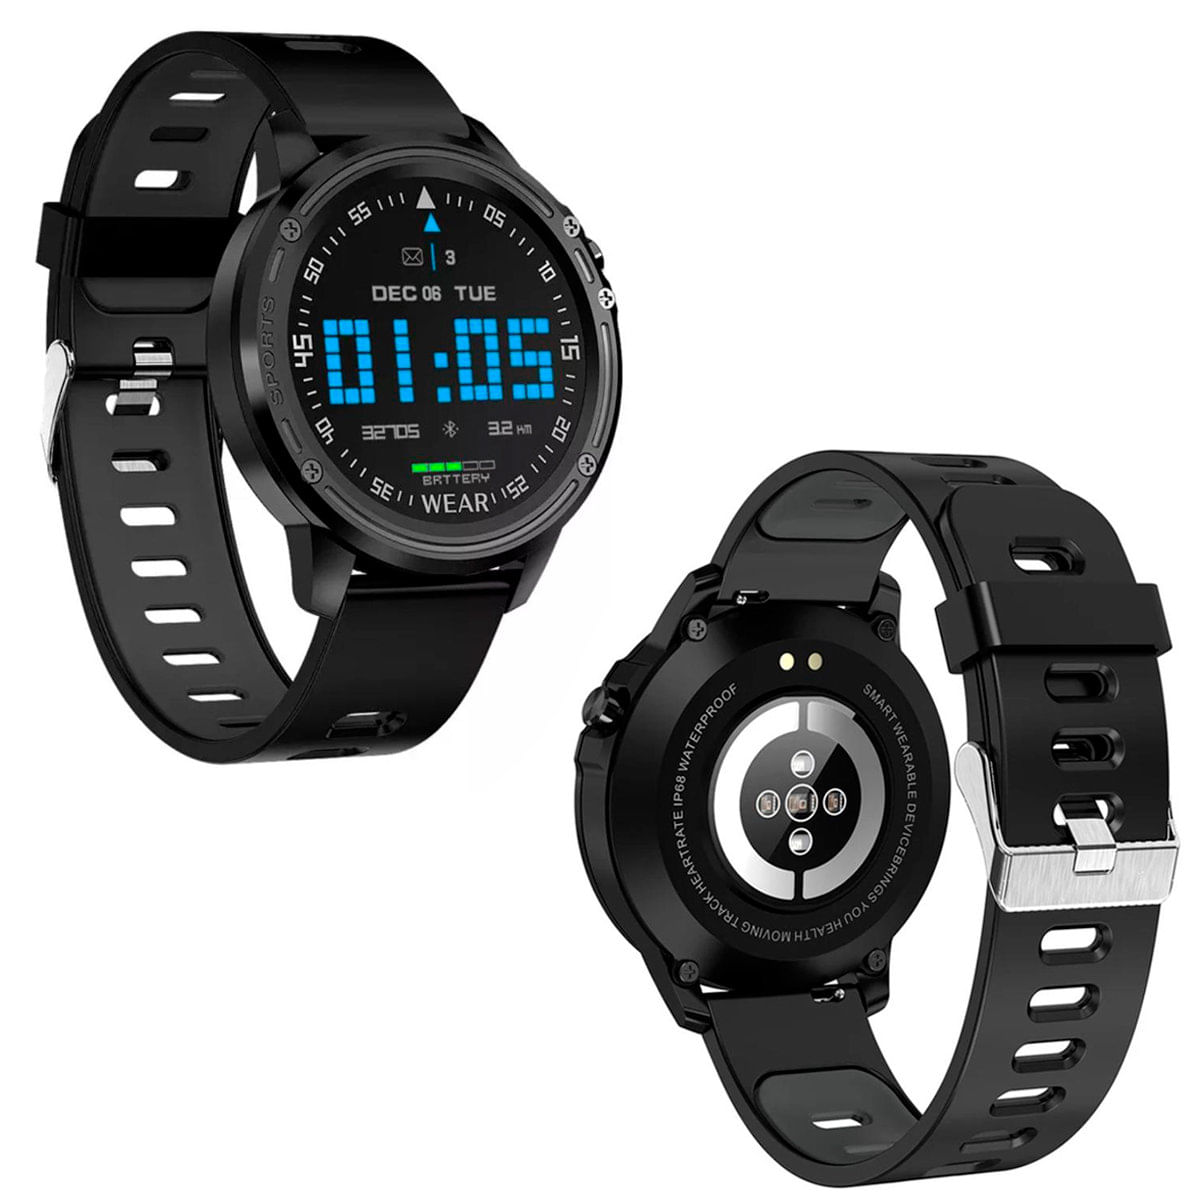 Gs wear смарт. Смарт часы Waterproof 1.3. Rohs ip68 Waterproof Smart Wearable device. Smart Wear часы.